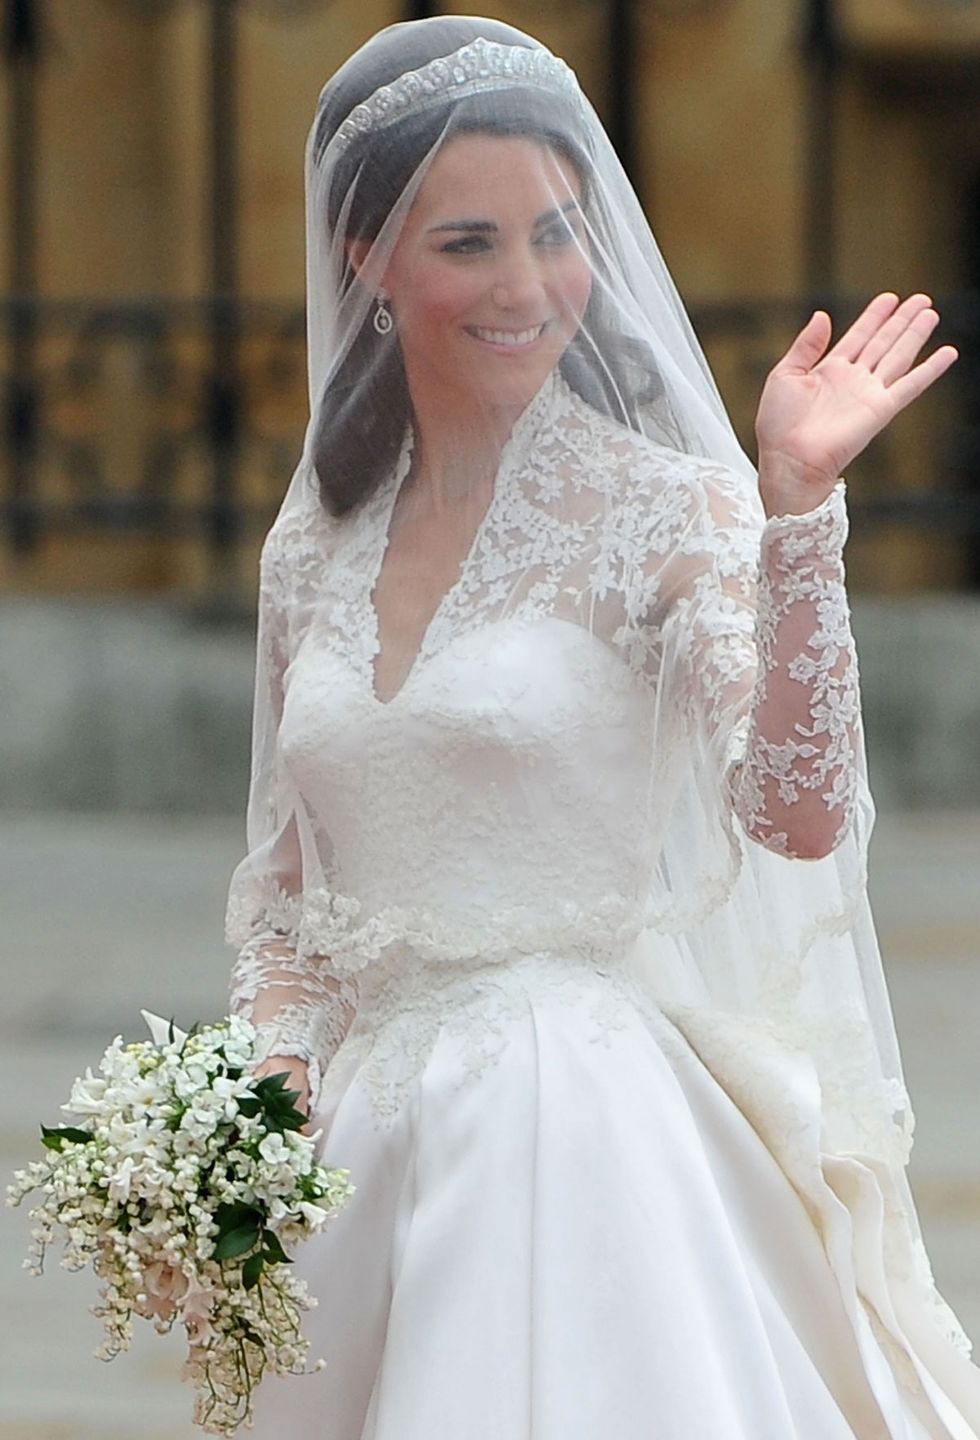 Veil, Wedding dress, Bride, Bridal accessory, Bridal veil, Clothing, Gown, Bridal clothing, Dress, Headpiece, 